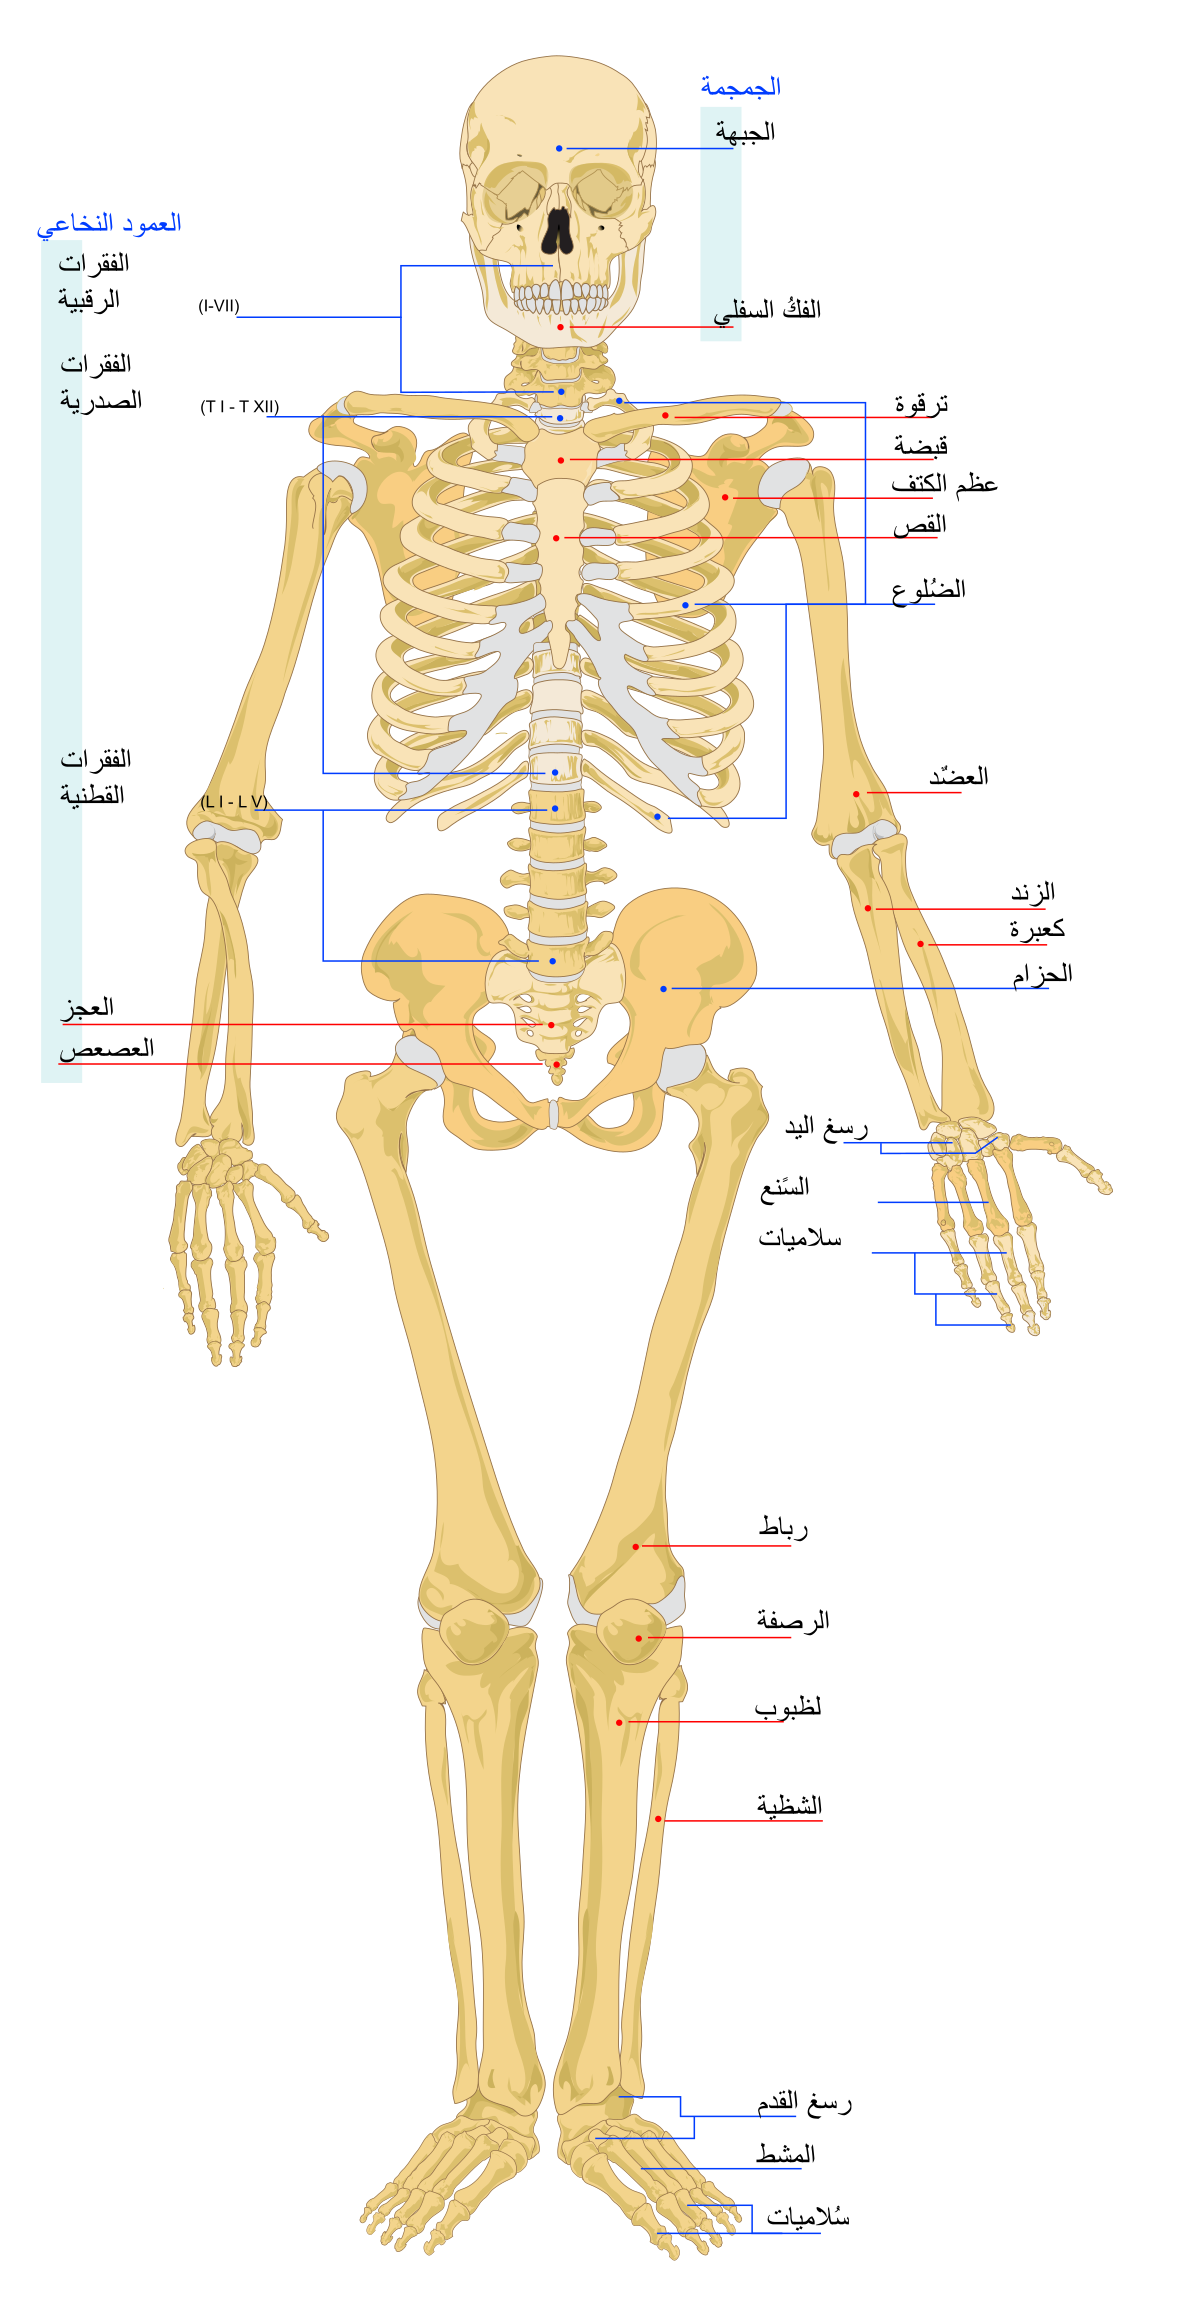 عدد عظام الانسان البالغ